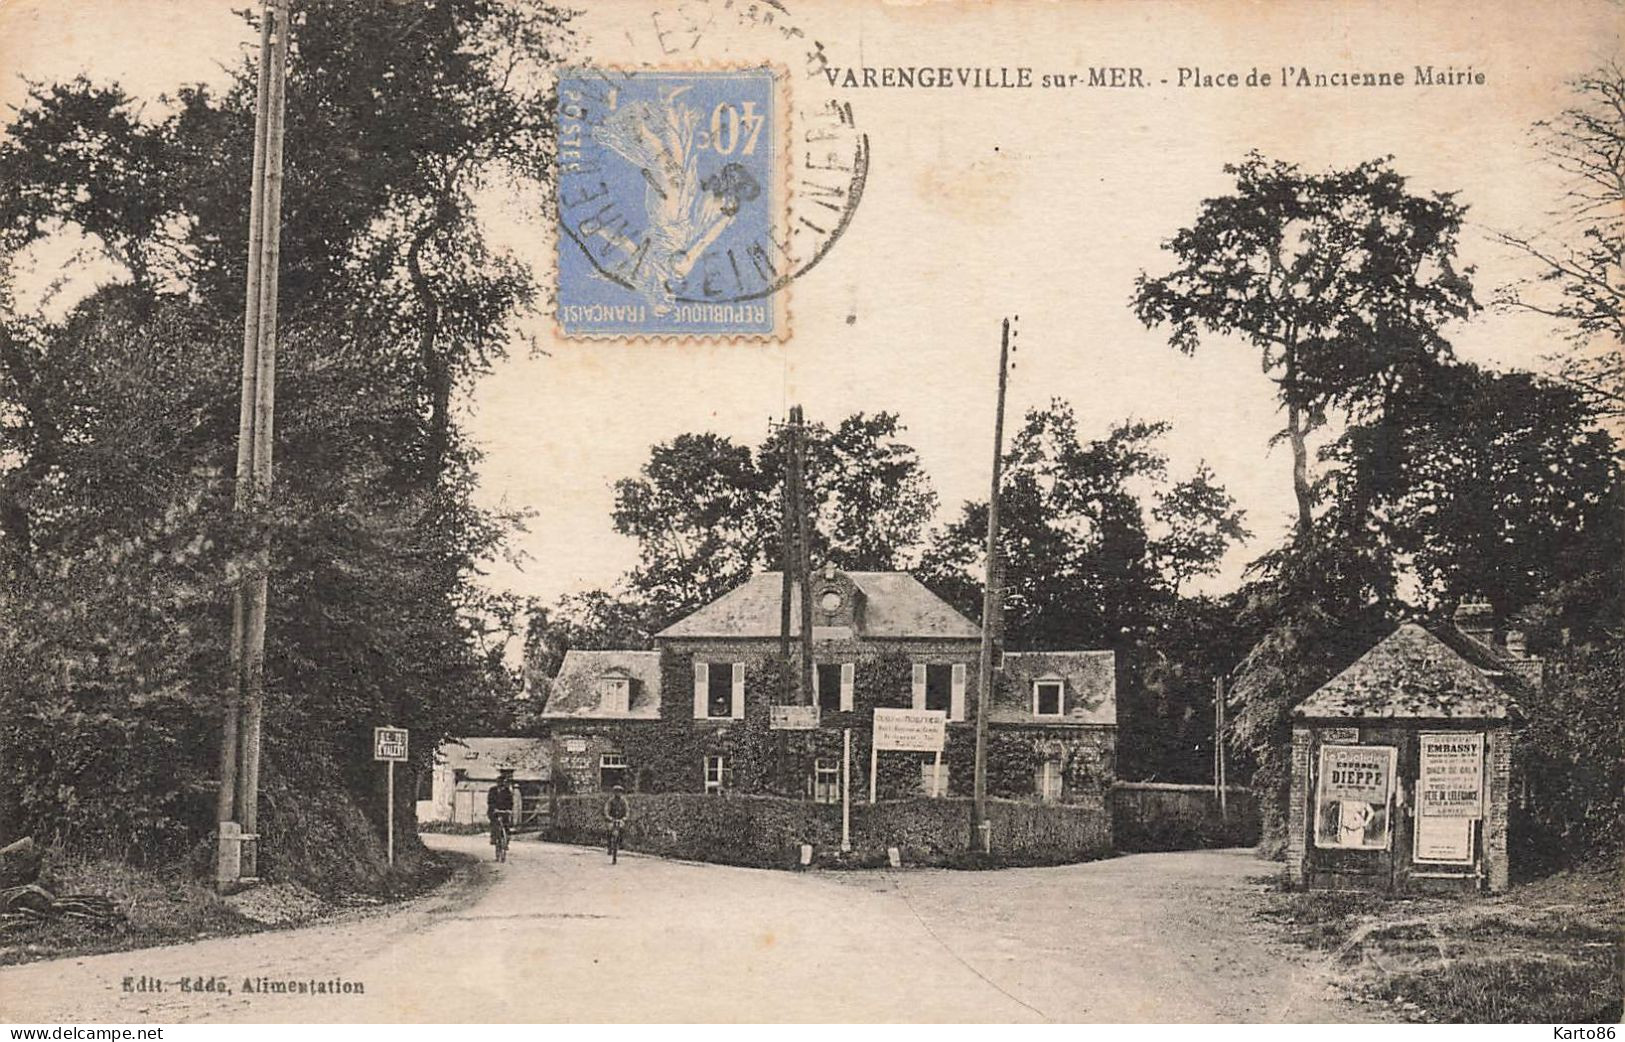 Varengeville * Place De L'ancienne Mairie * Route - Varengeville Sur Mer